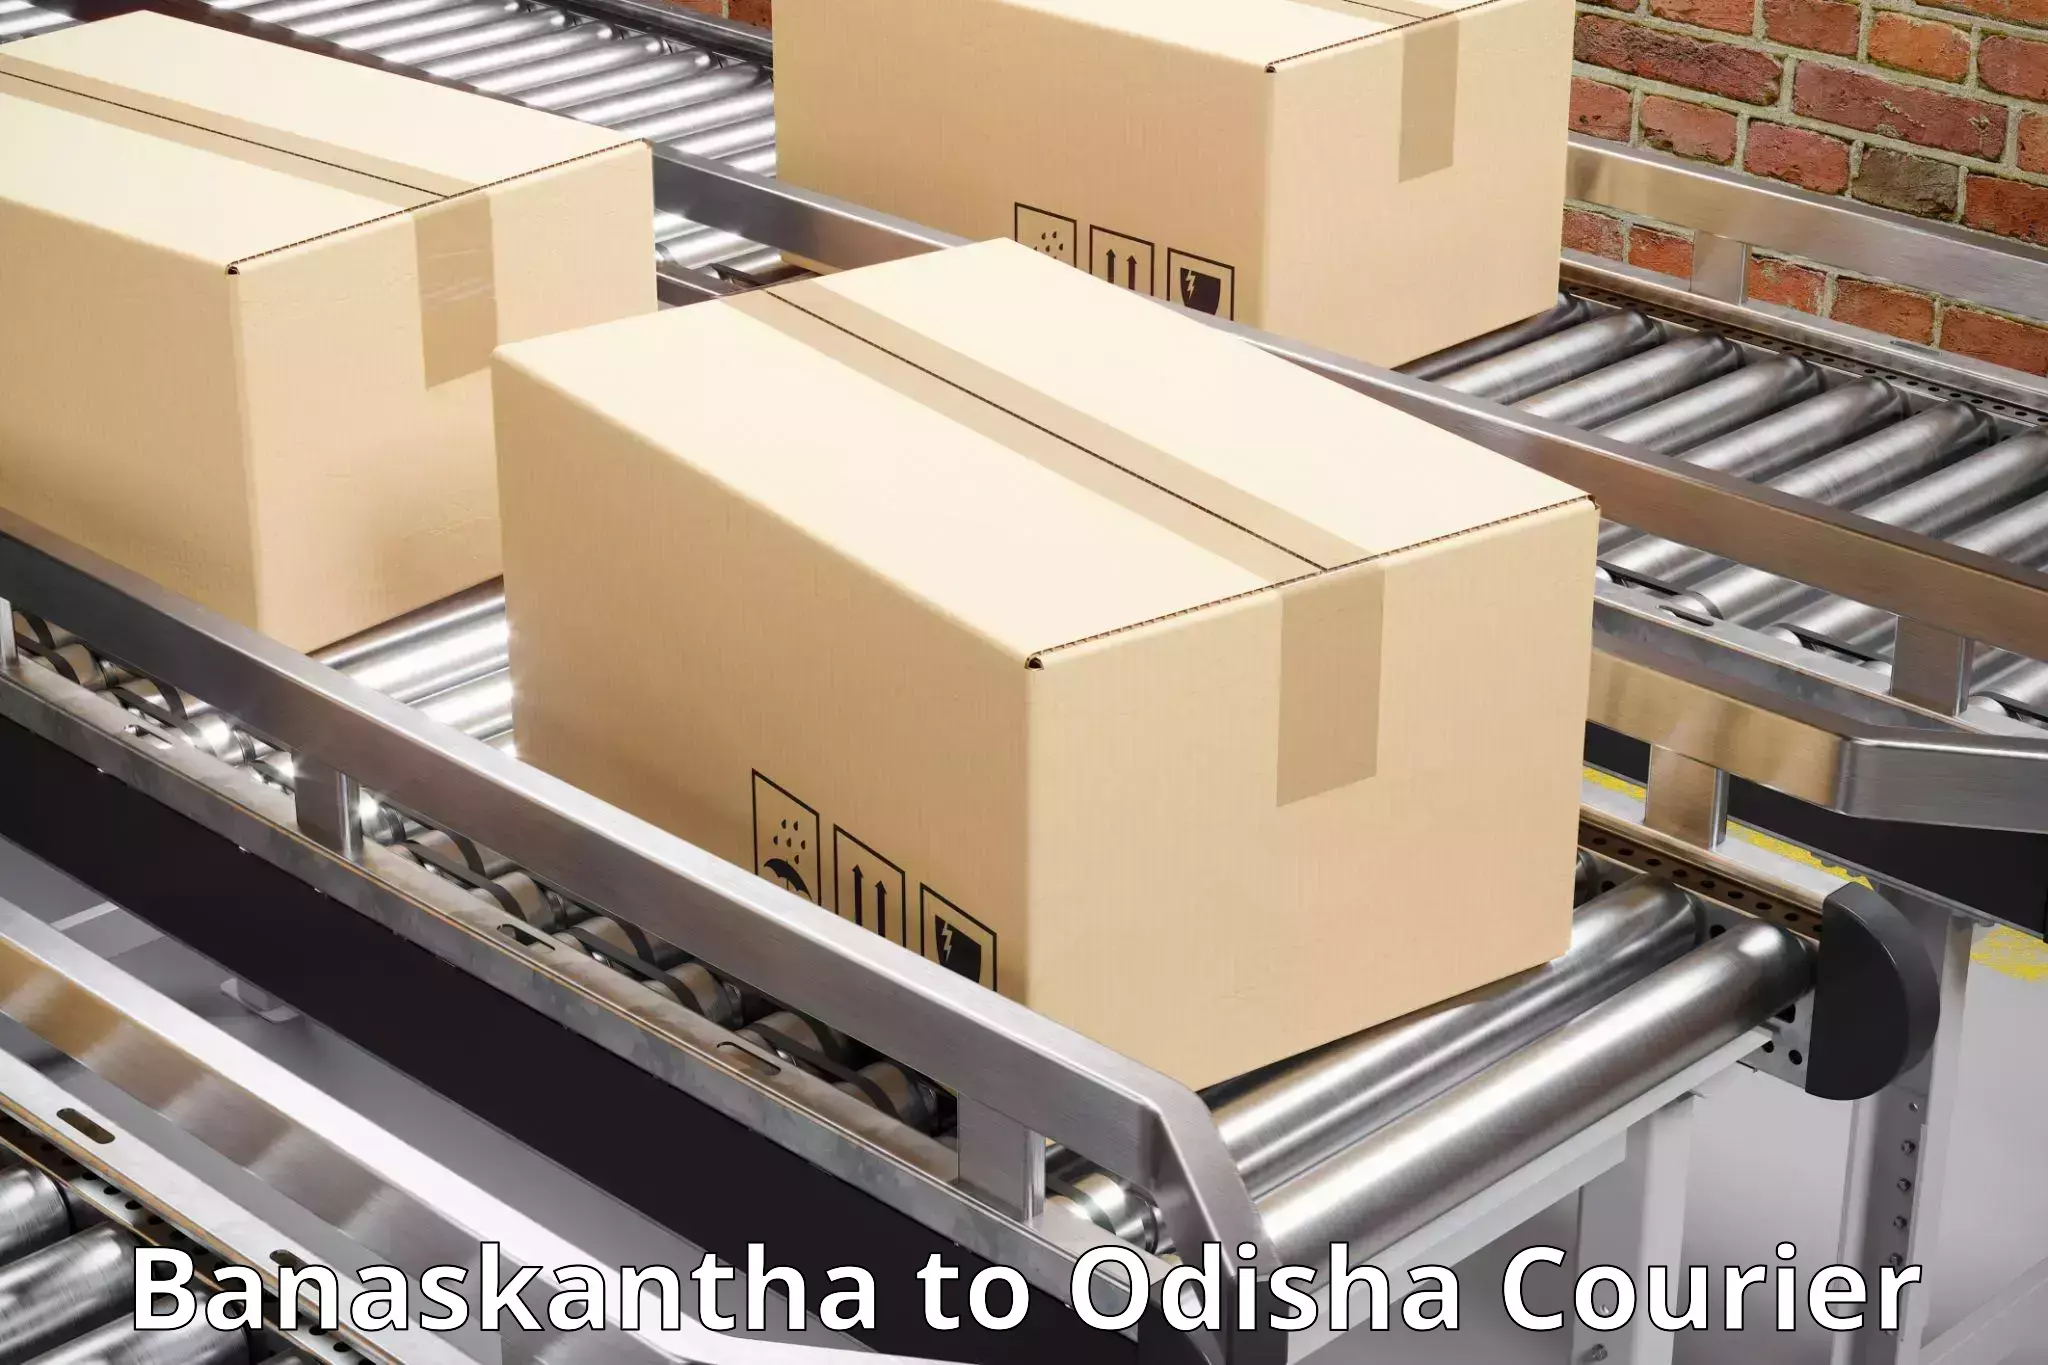 Affordable parcel service Banaskantha to Sankerko